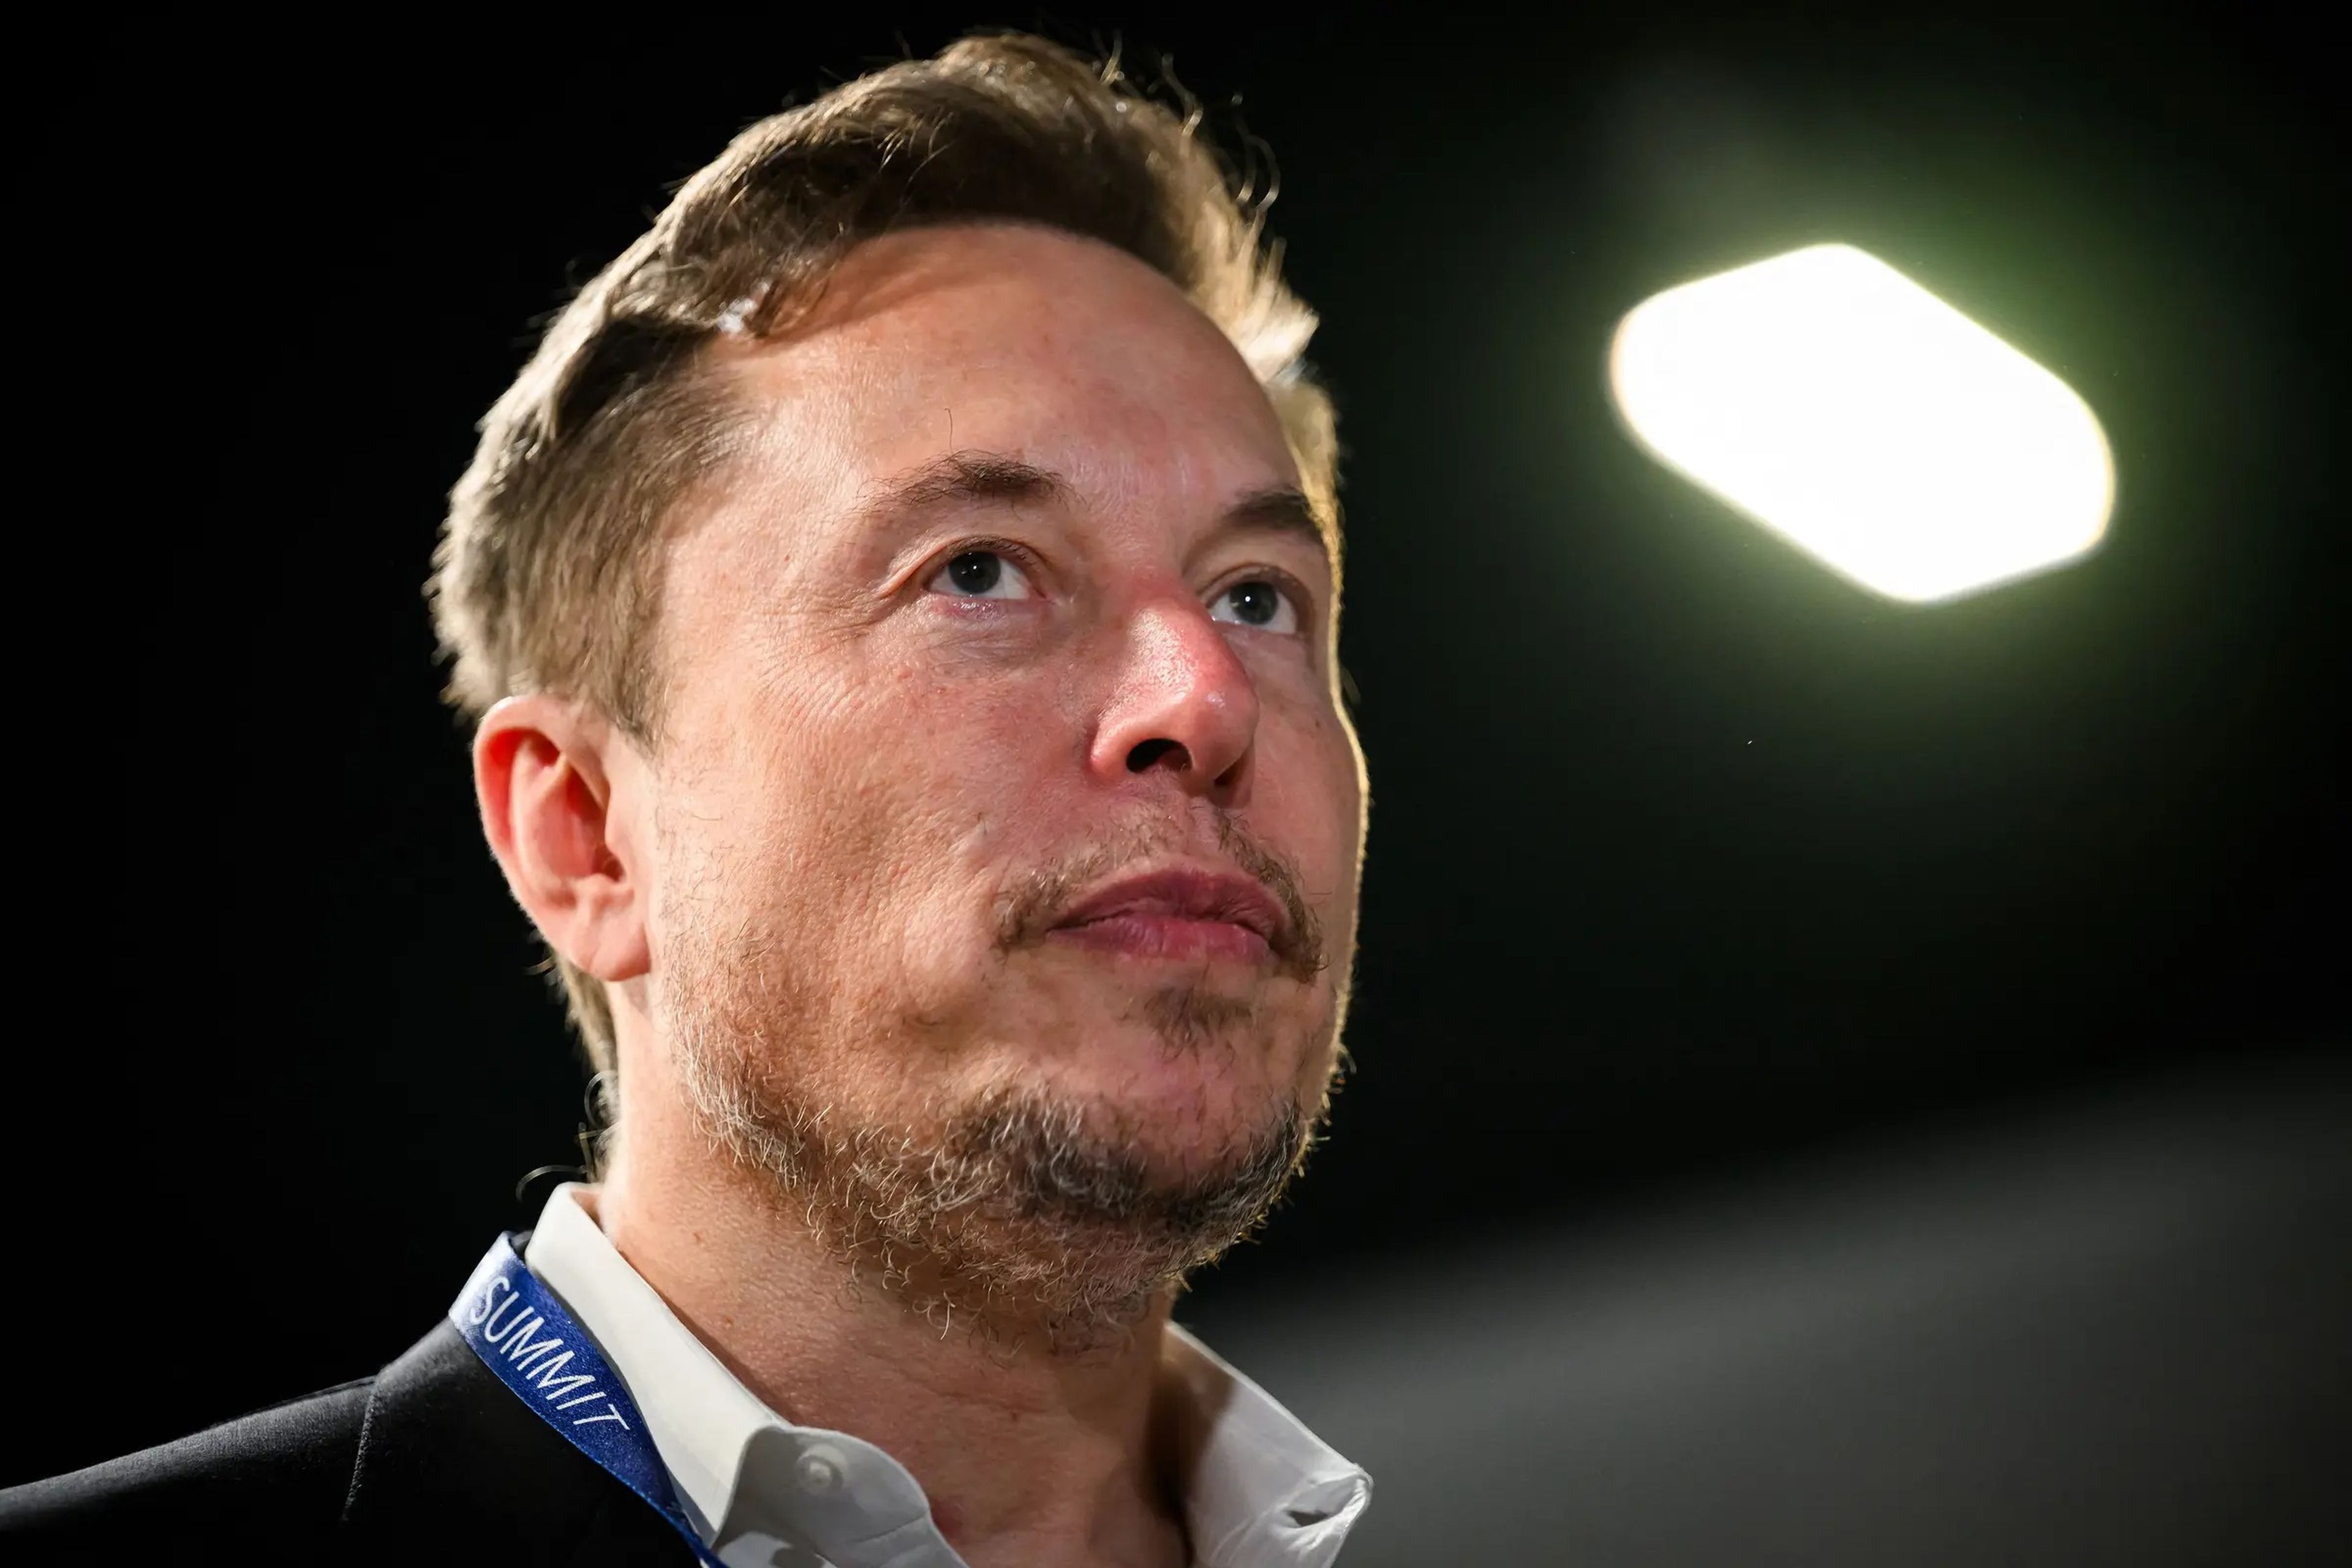 Tesla, compañía dirigida por Elon Musk, está publicando anuncios en X, la antigua Twitter.